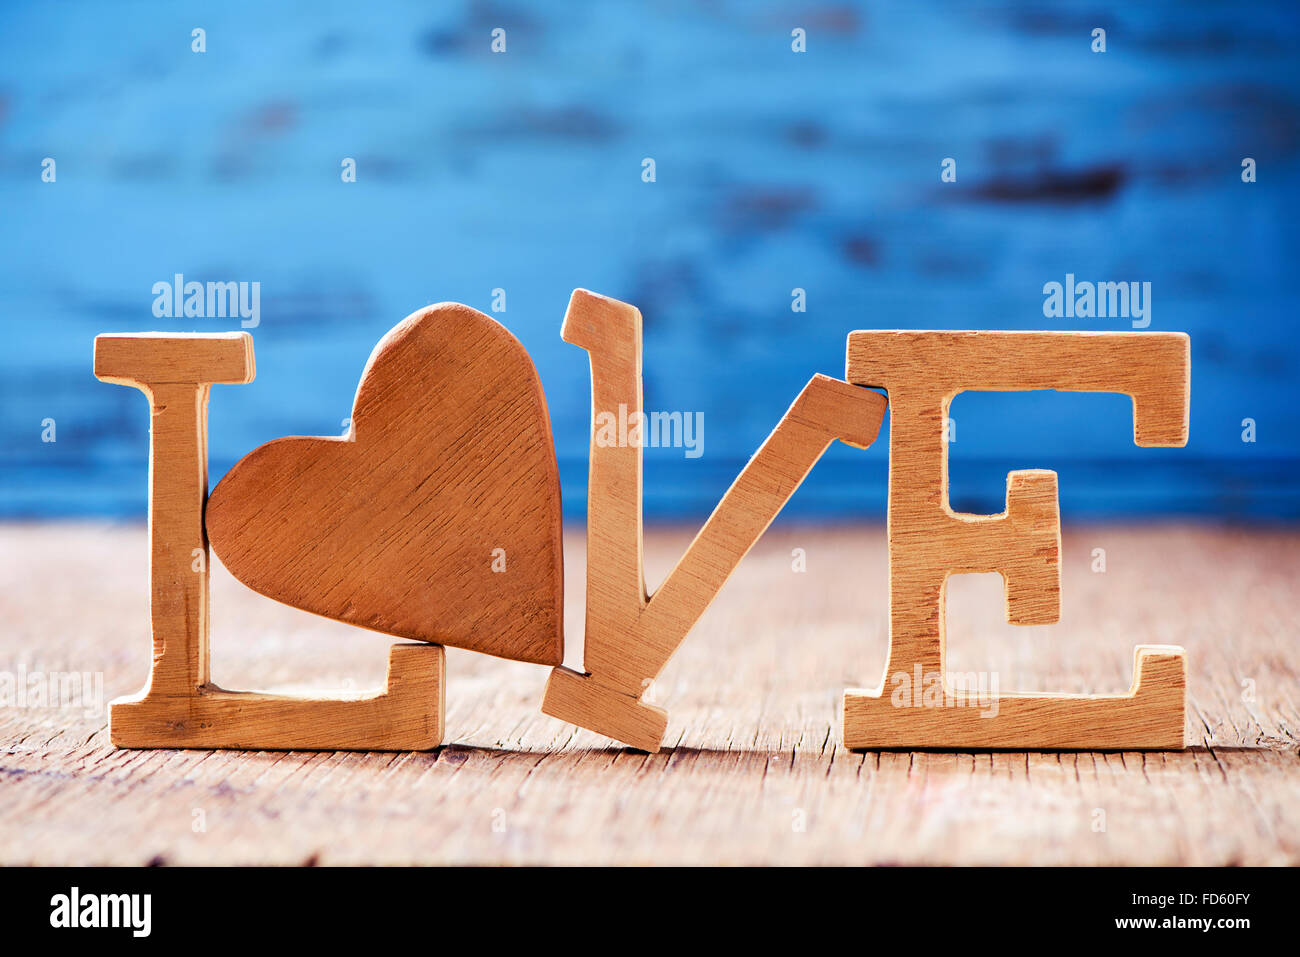 einige hölzerne Buchstaben bilden das Wort Liebe mit einem Herz aus Holz anstelle von den Buchstaben o im Hintergrund blau rustikal aus Holz Stockfoto